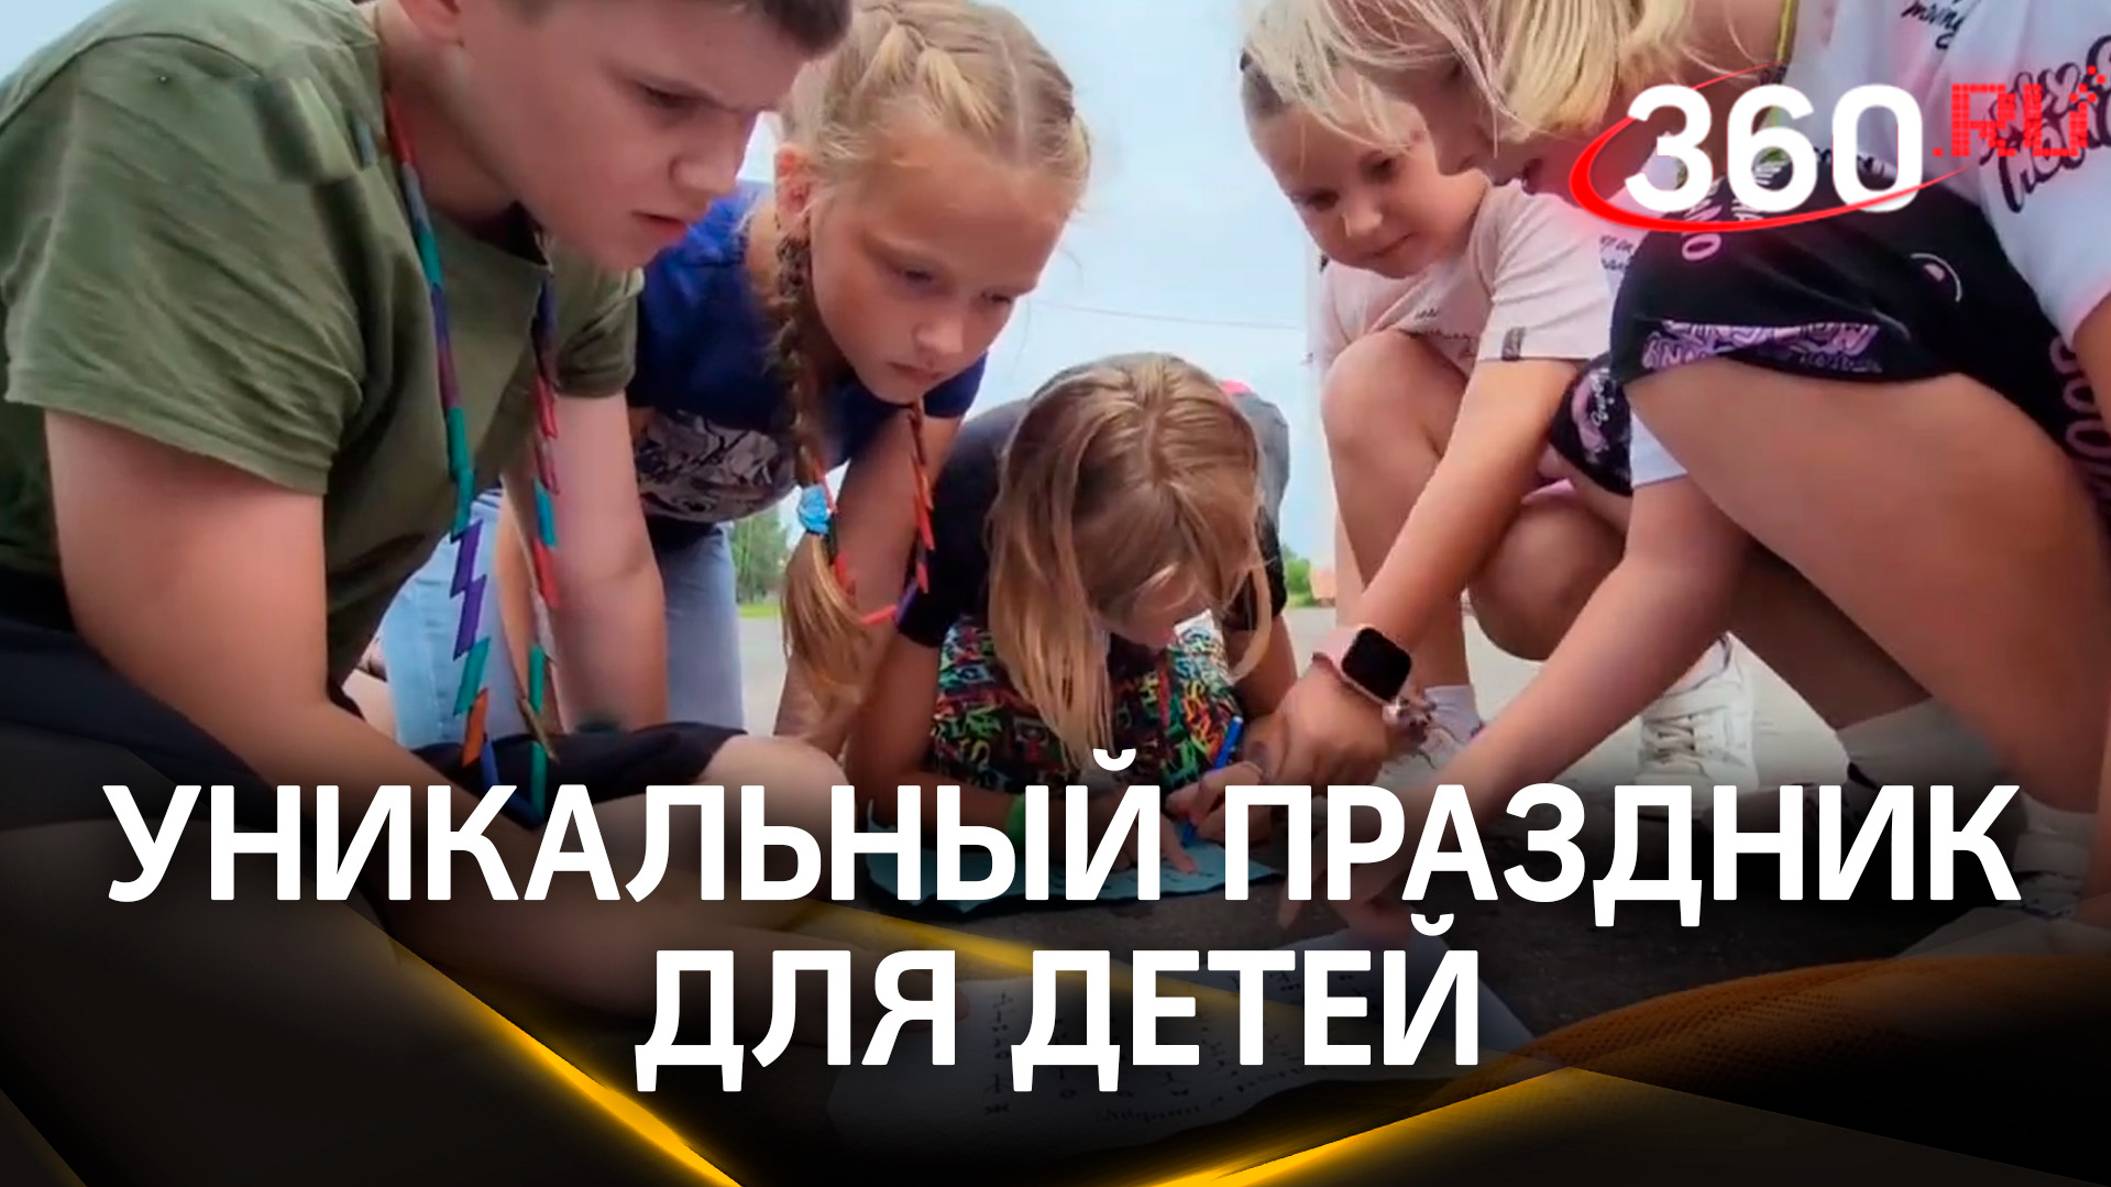 Дед Мороз приехал в июле: необычный праздник провели для детей в Егорьевске